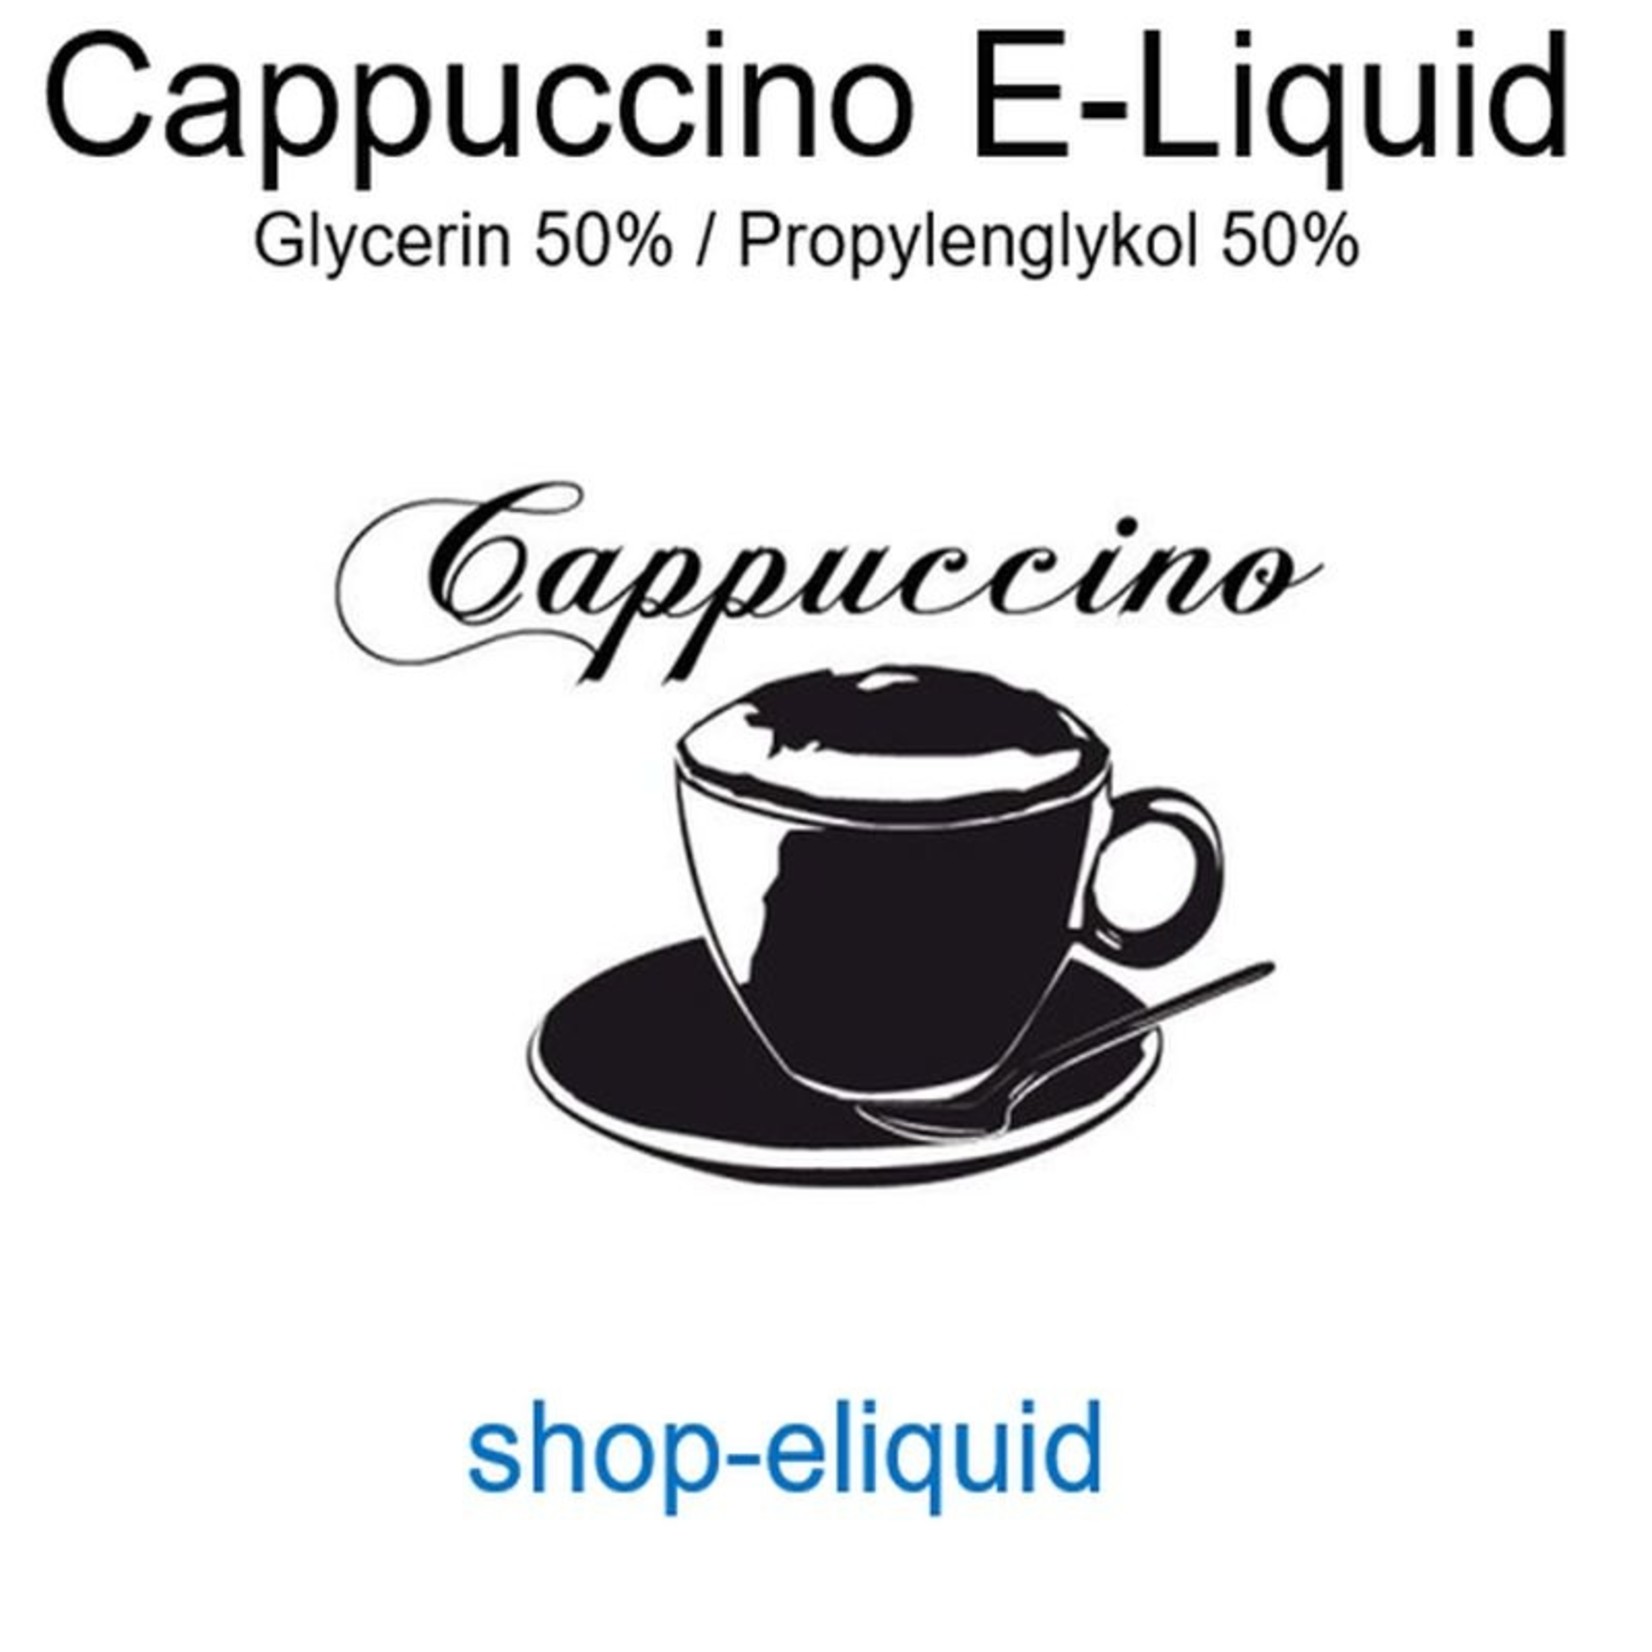 shop-eliquid Cappuccino E-Liquid